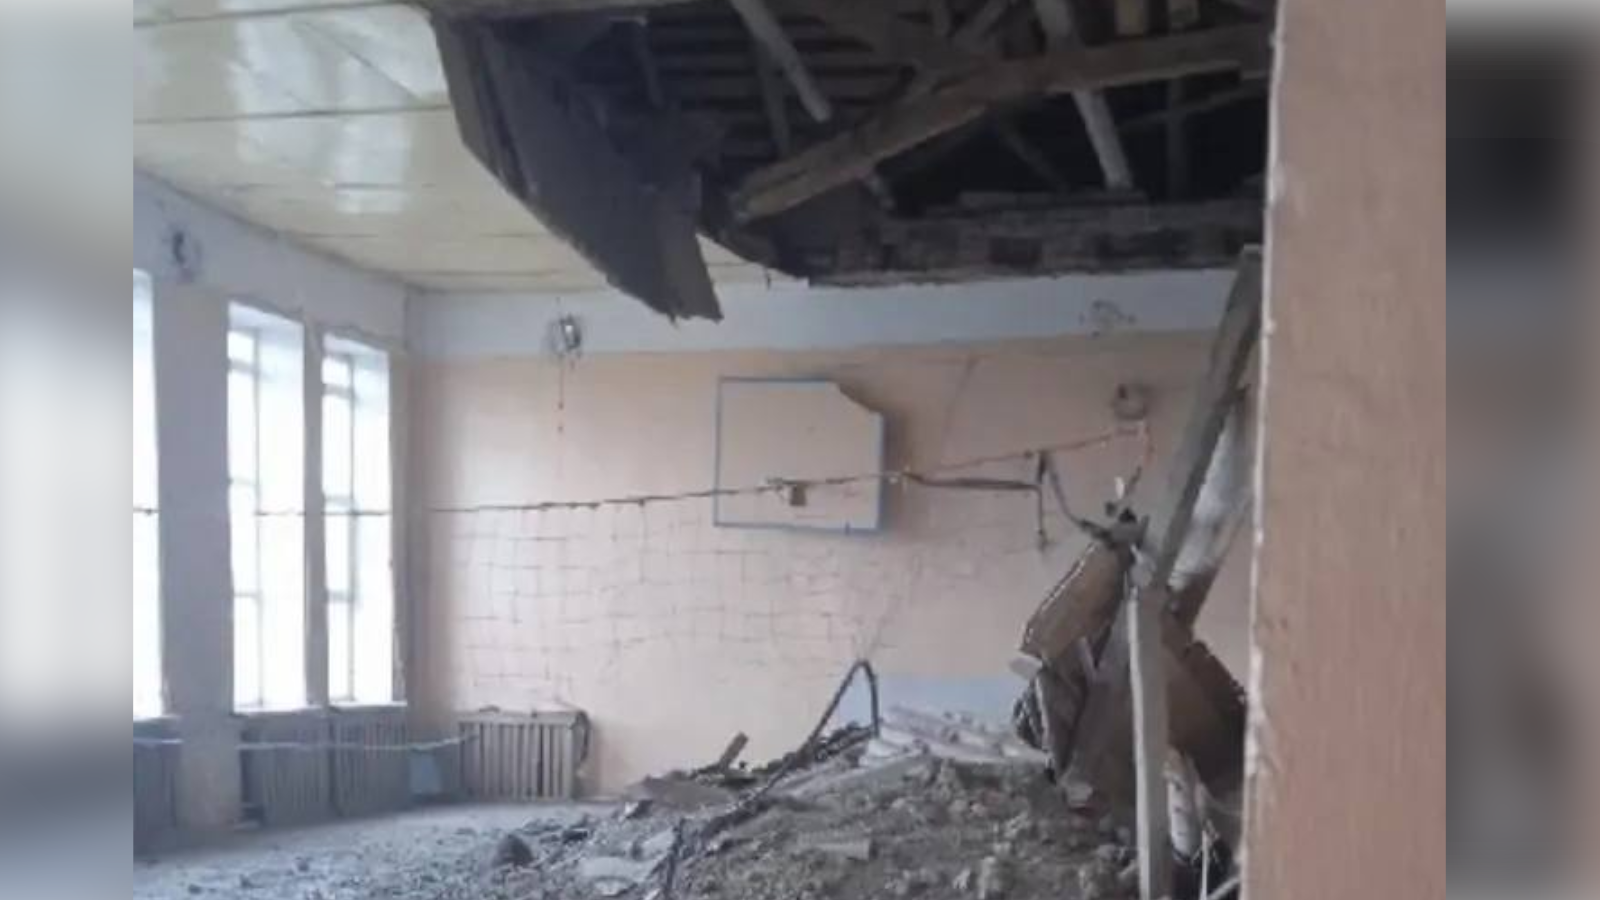 Сюда не прилетала мина или снаряд, которые хабировские батальоны запускают по украинским школам